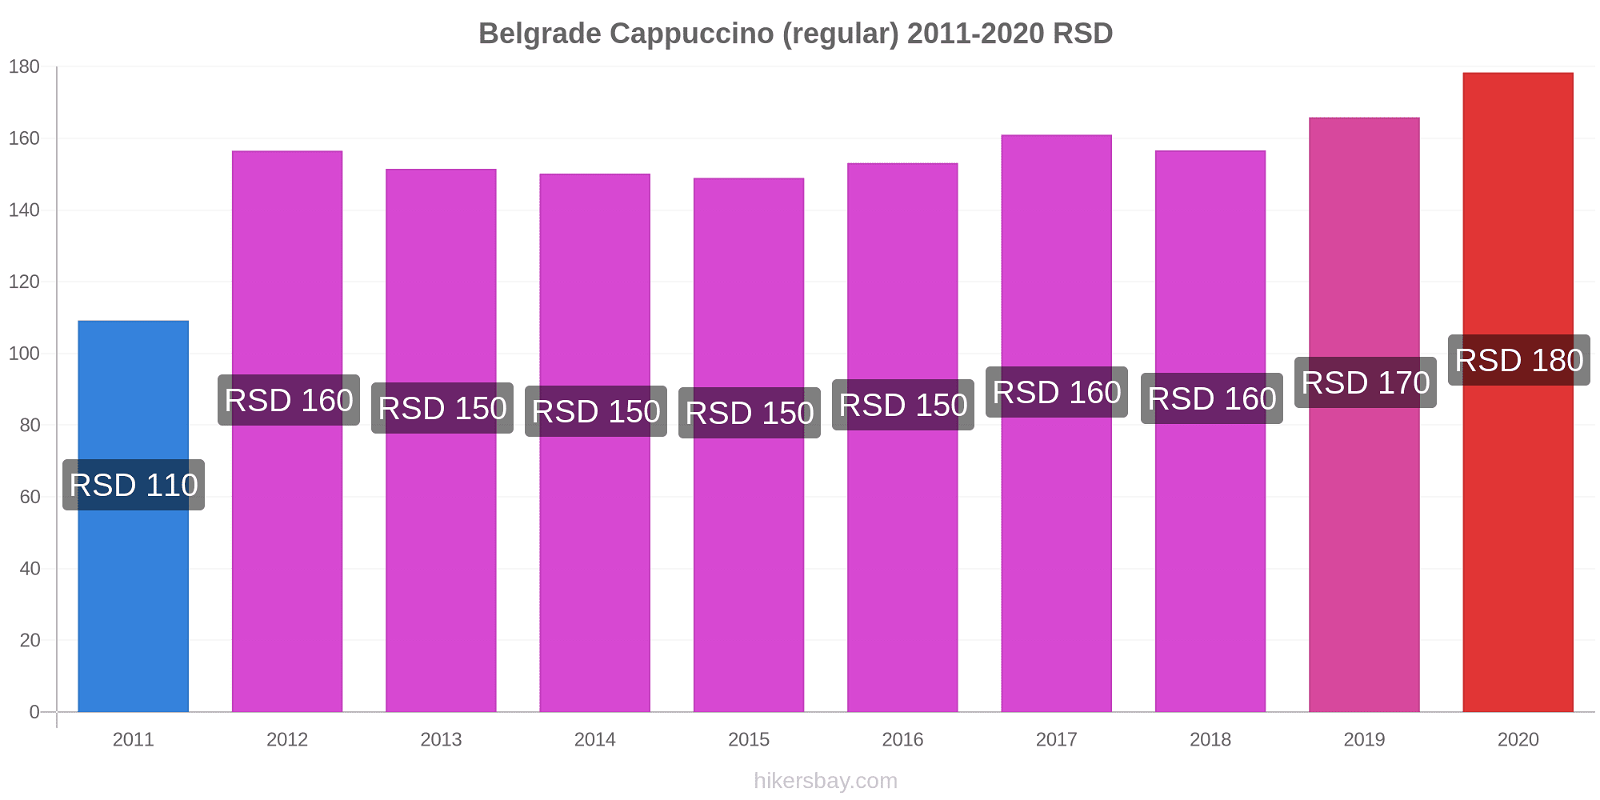 Belgrade price changes Cappuccino (regular) hikersbay.com